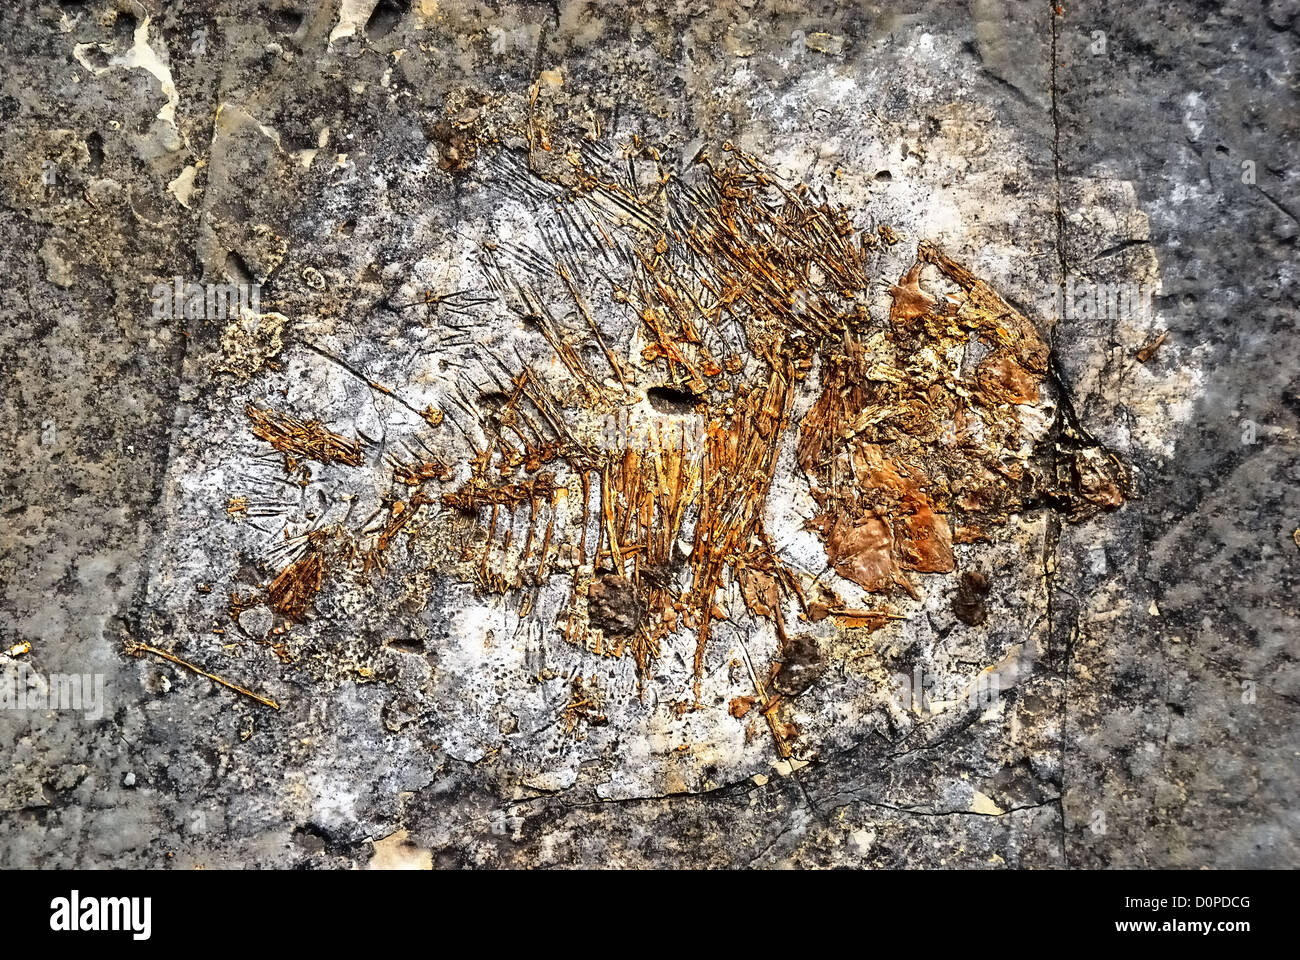 Le dépôt de fossiles de Pietraroja (Benevento), l'Italie, le sud de l'Italie Appennino. Un fossile de poisson. Banque D'Images